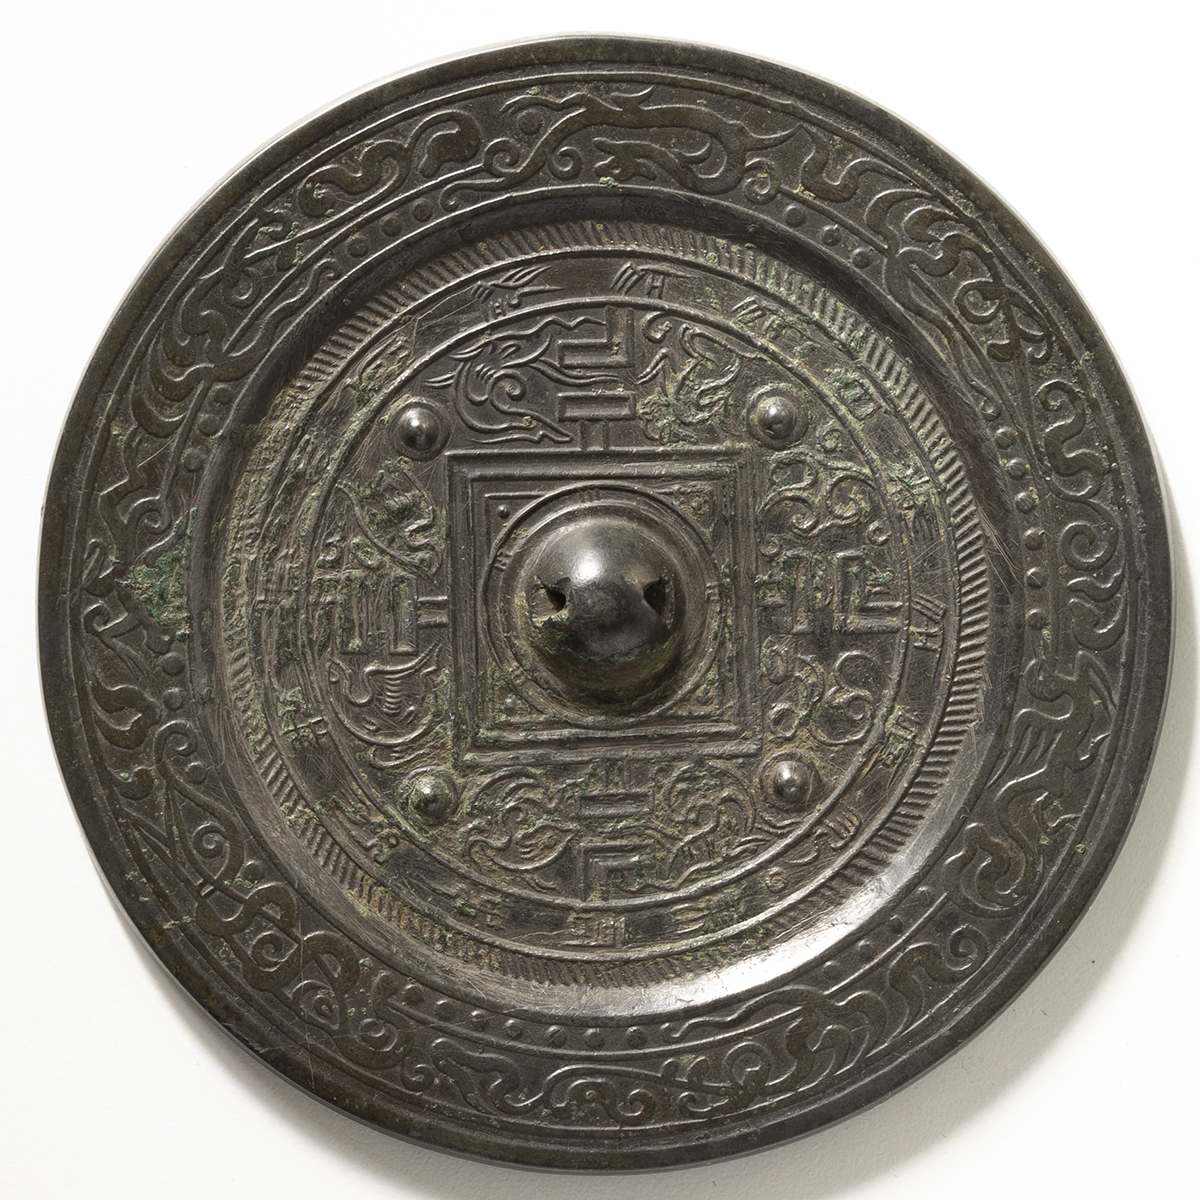 貨幣博物館 | Ornaments 置物 銅鏡 方格規矩四乳八獣鏡 磨き,錆取り痕 佳品